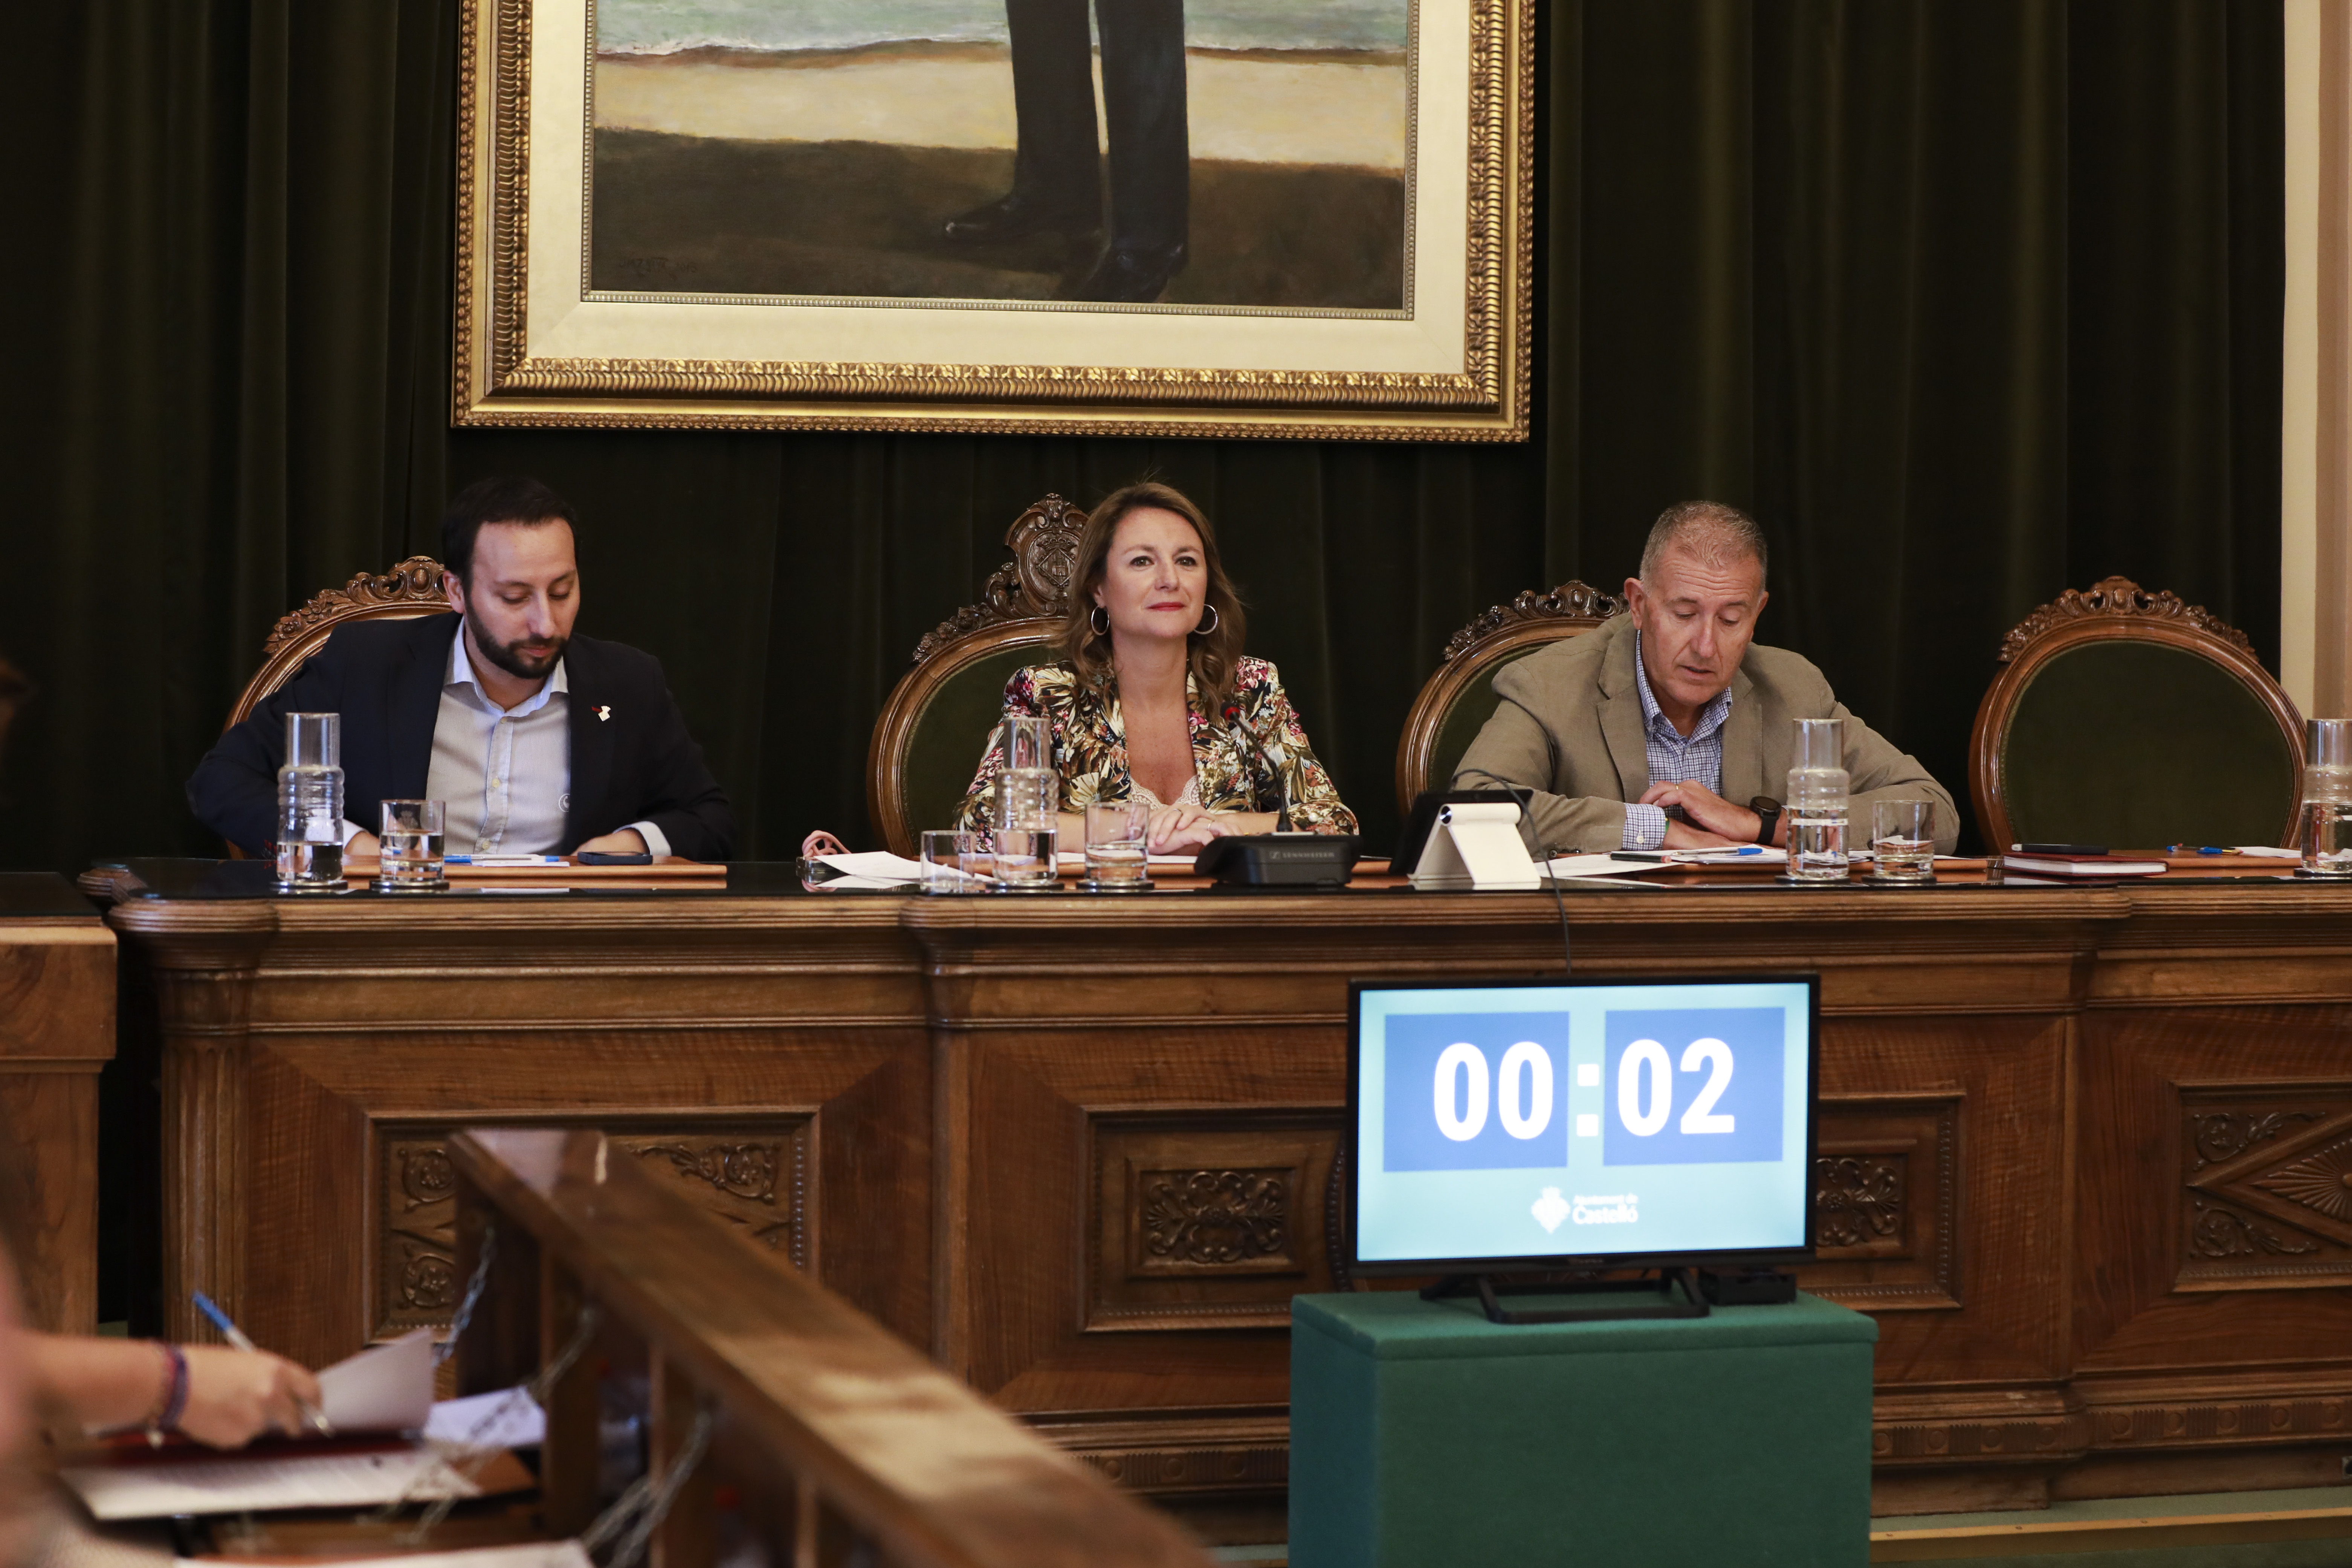 El Ayuntamiento de Castellón aprueba una modificación de crédito por valor de 2,8 millones para afrontar pagos pendientes y atender a las entidades sociales